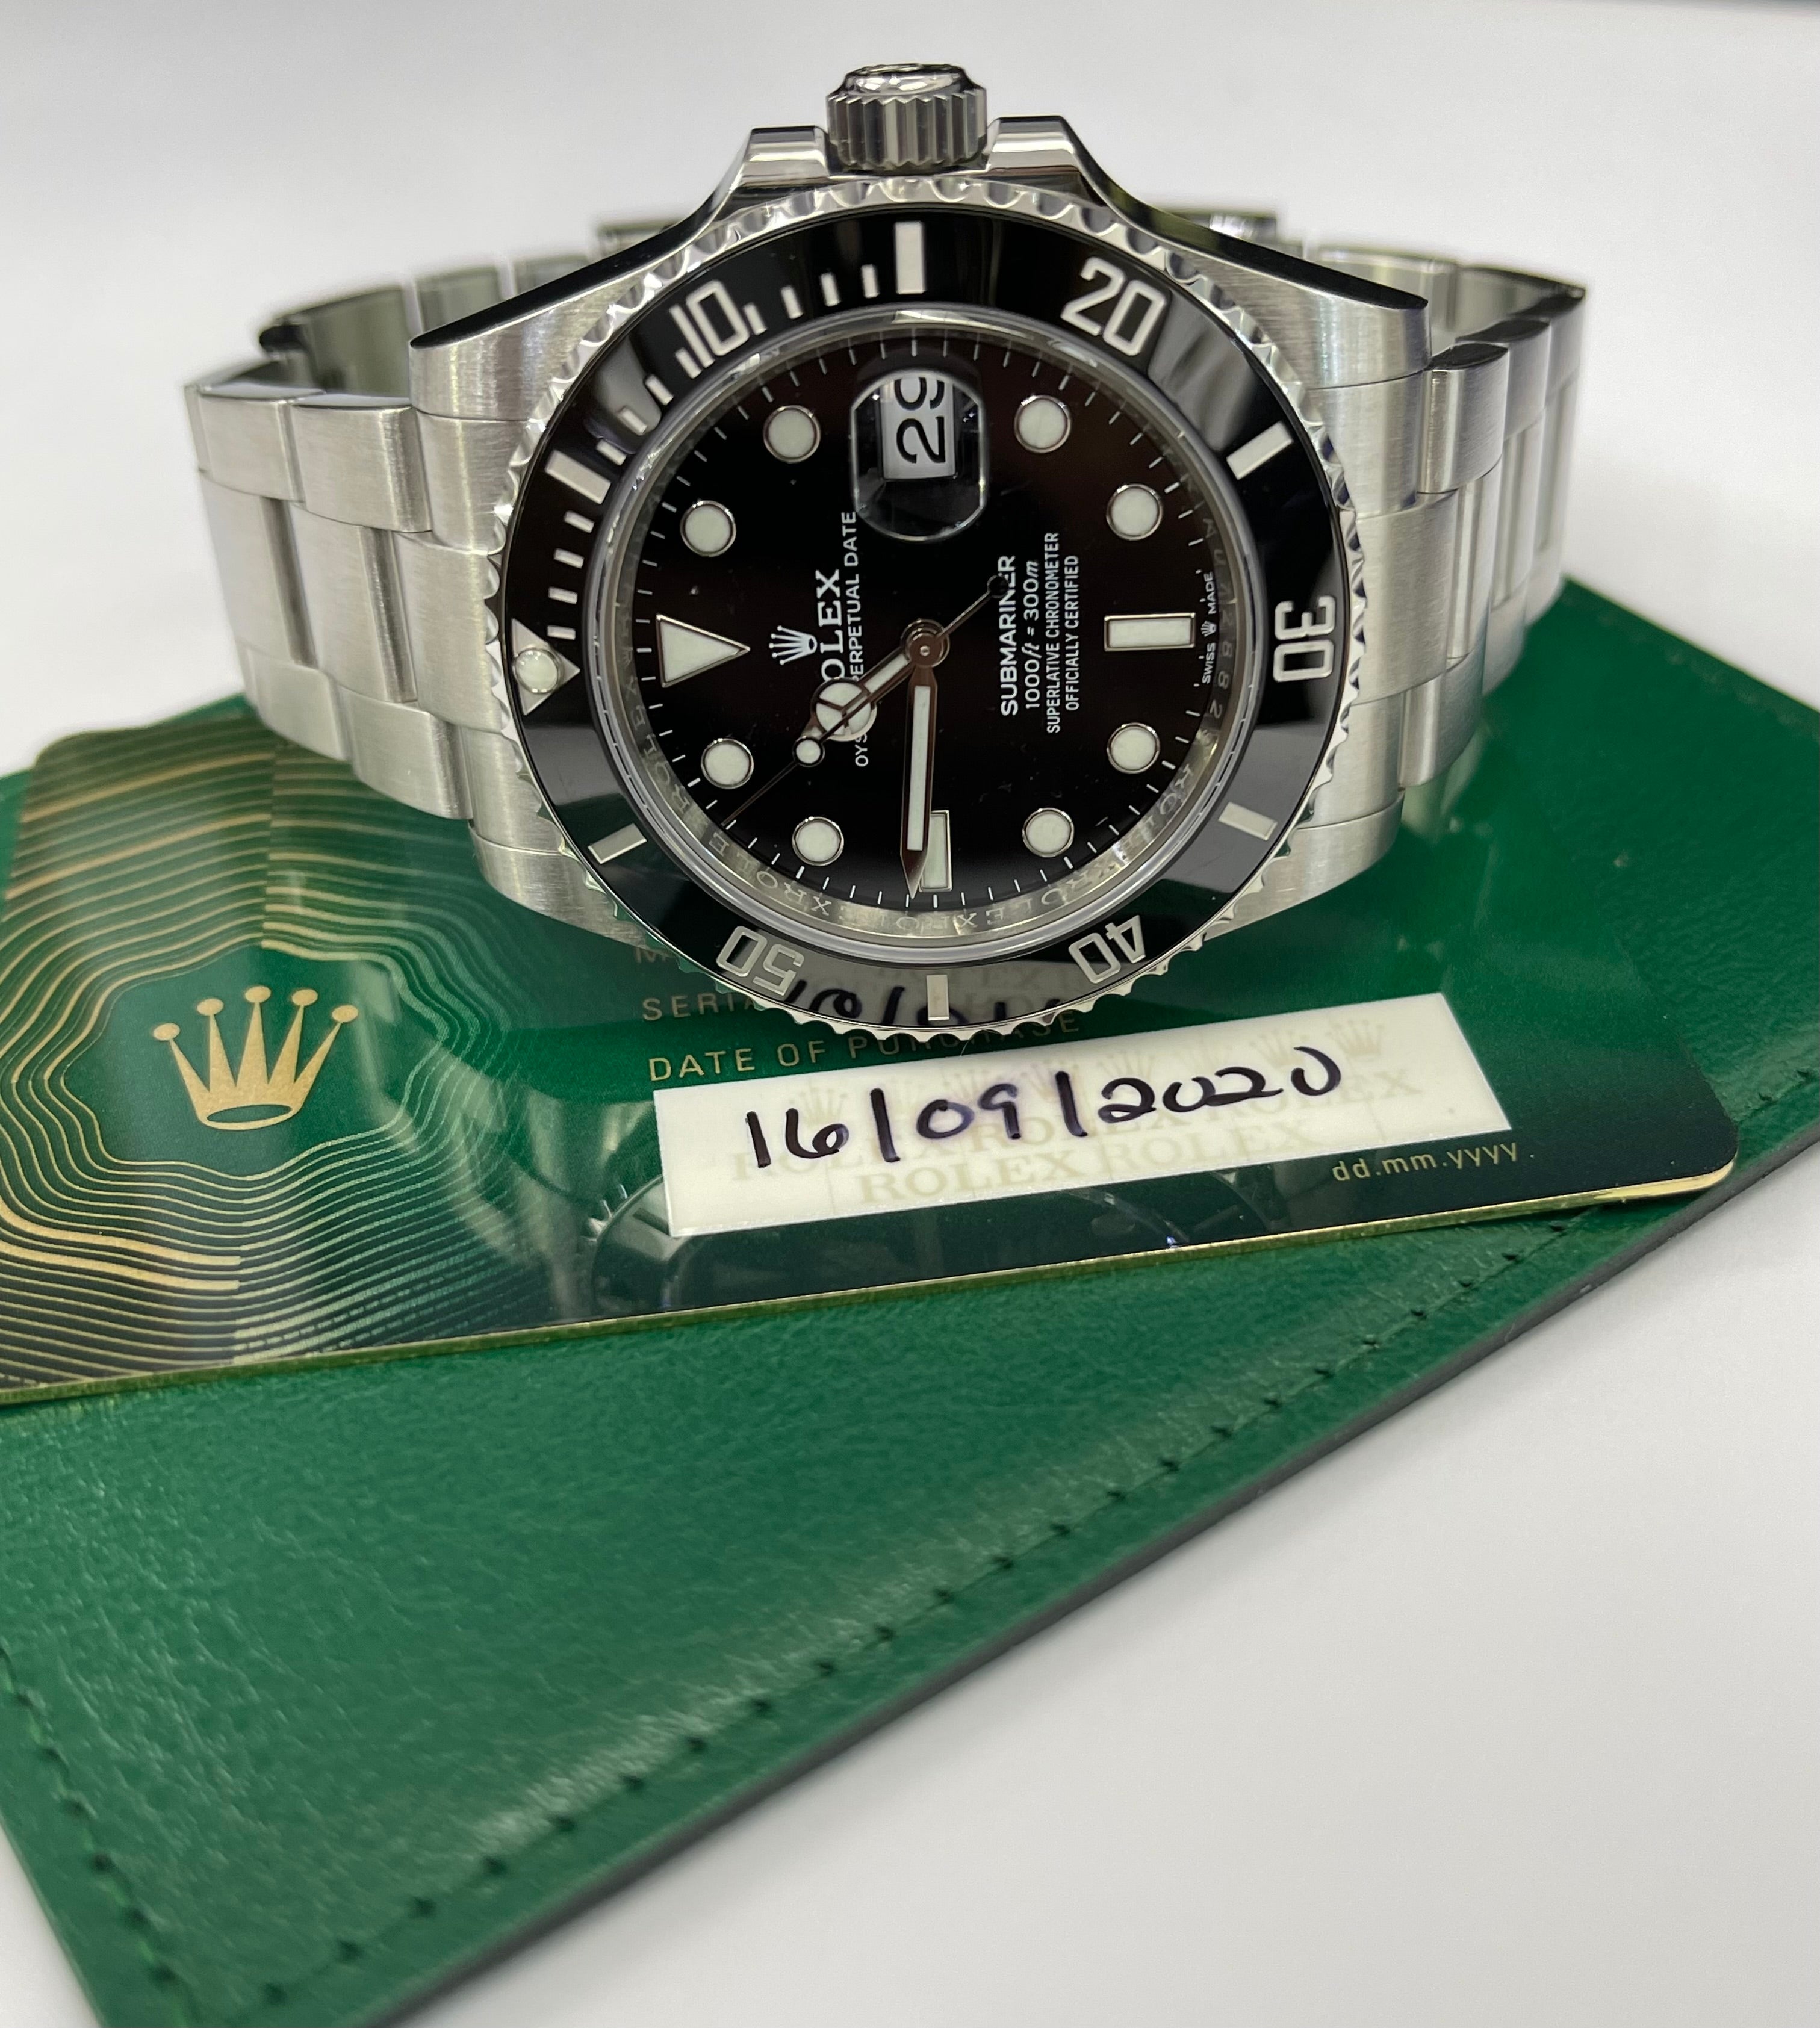 Rolex Ceramic Submariner Date Stainless Steel Watch 41mm Ref 126610LN